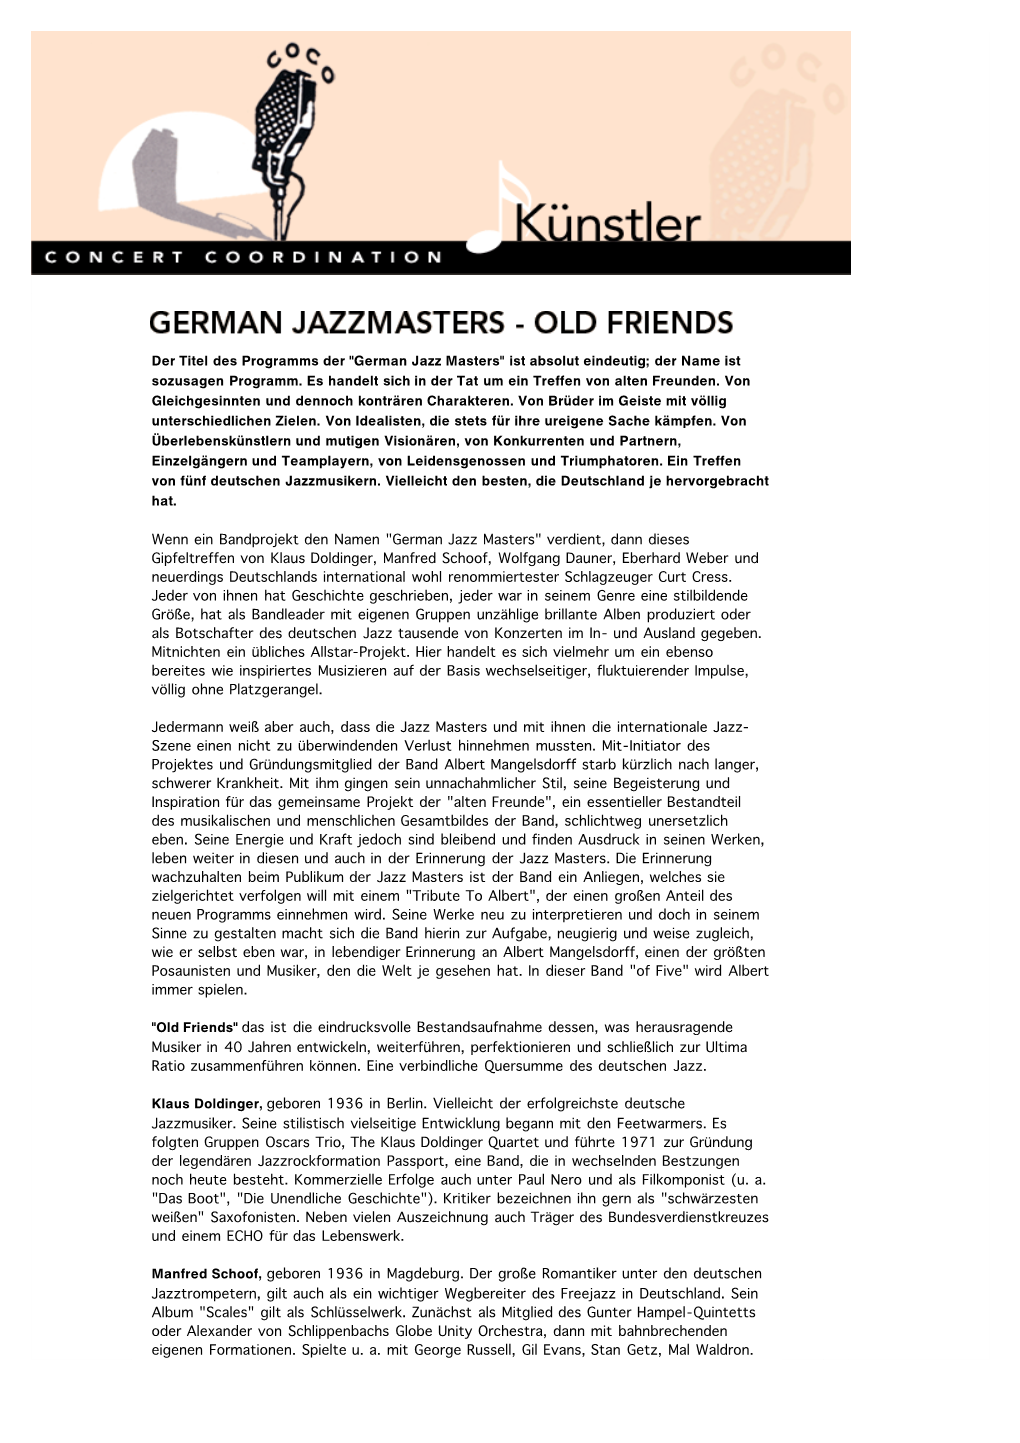 German Jazz Masters" Ist Absolut Eindeutig; Der Name Ist Sozusagen Programm